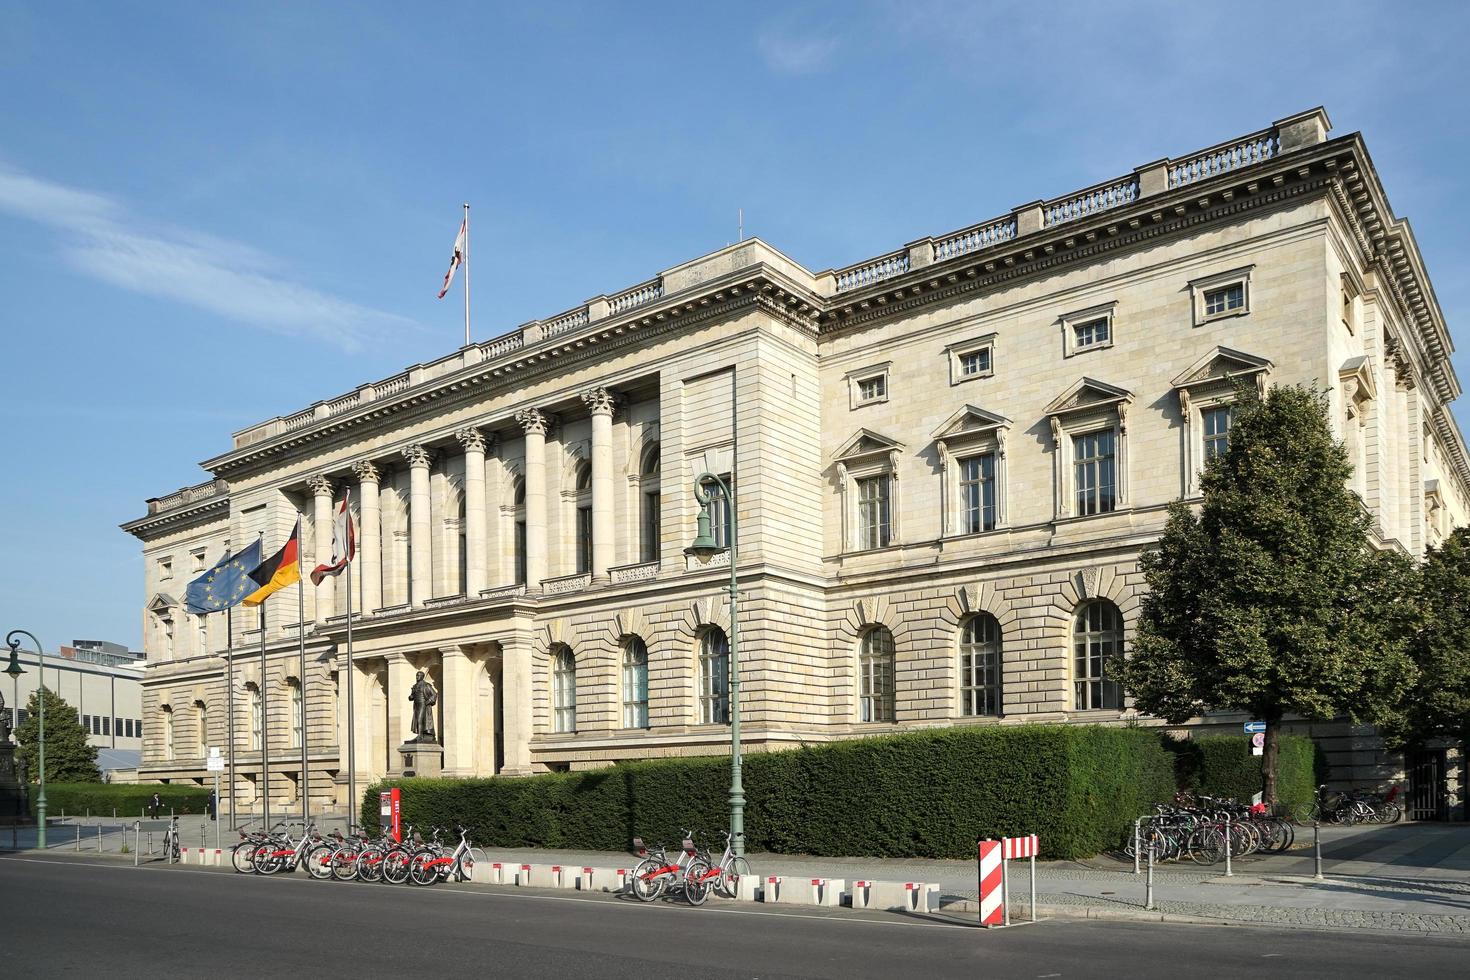 Berlín, Alemania, 2014. abgeordnetenhaus, edificio del parlamento estatal en Berlín. foto